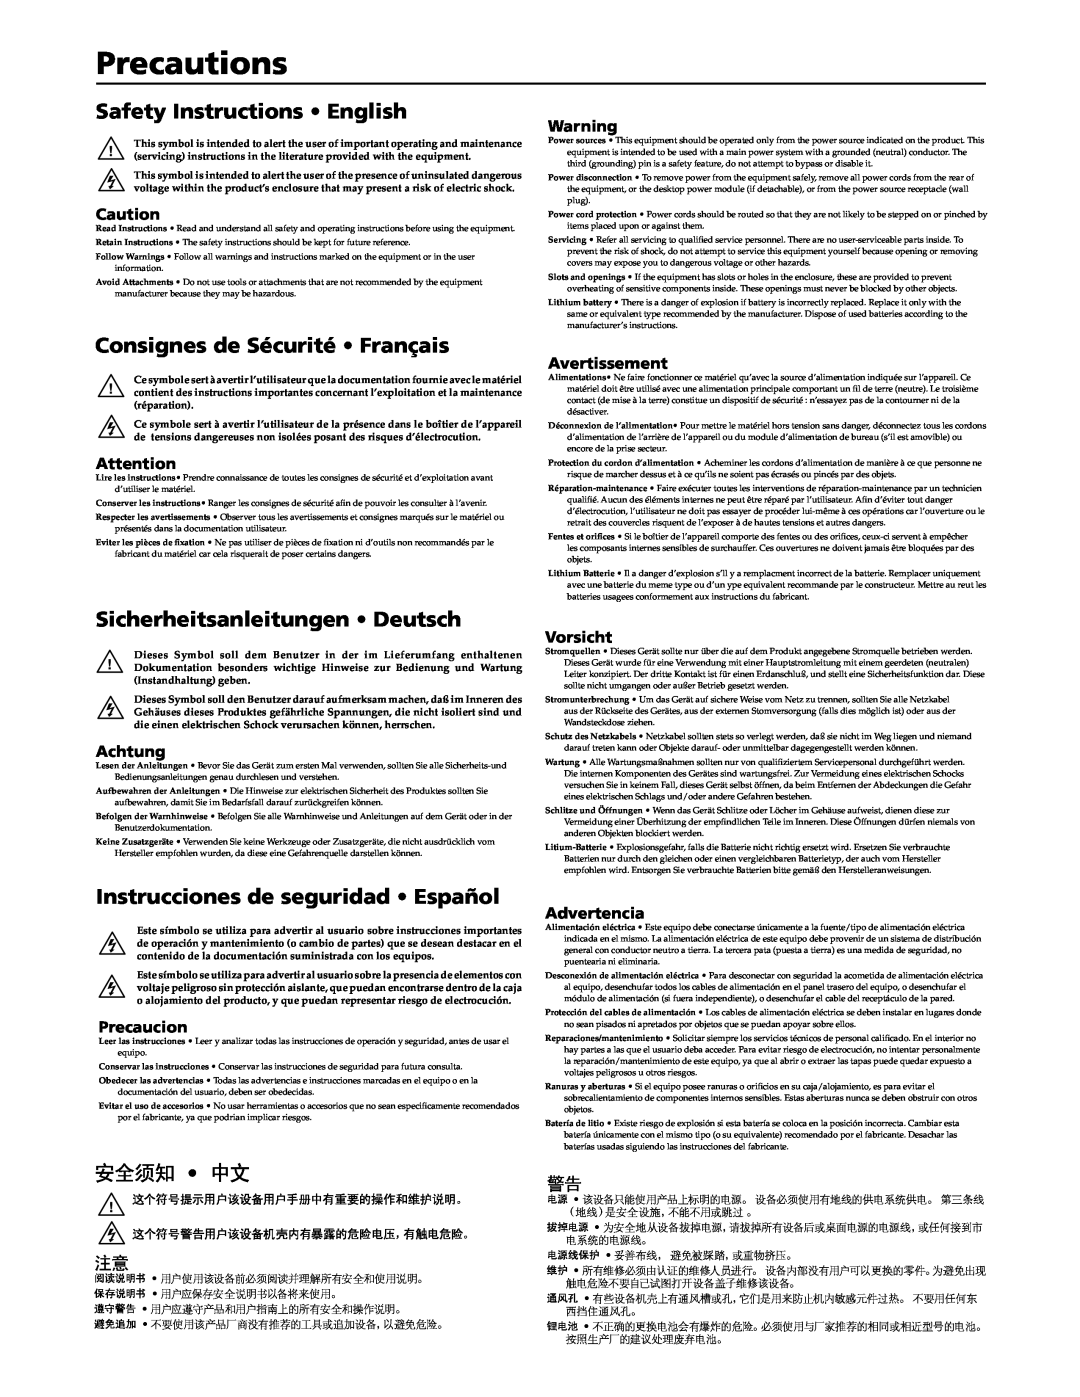 Extron electronic PVS 300 manual Precautions, Safety Instructions English, Consignes de Sécurité Français, 安全须知 中文, Achtung 